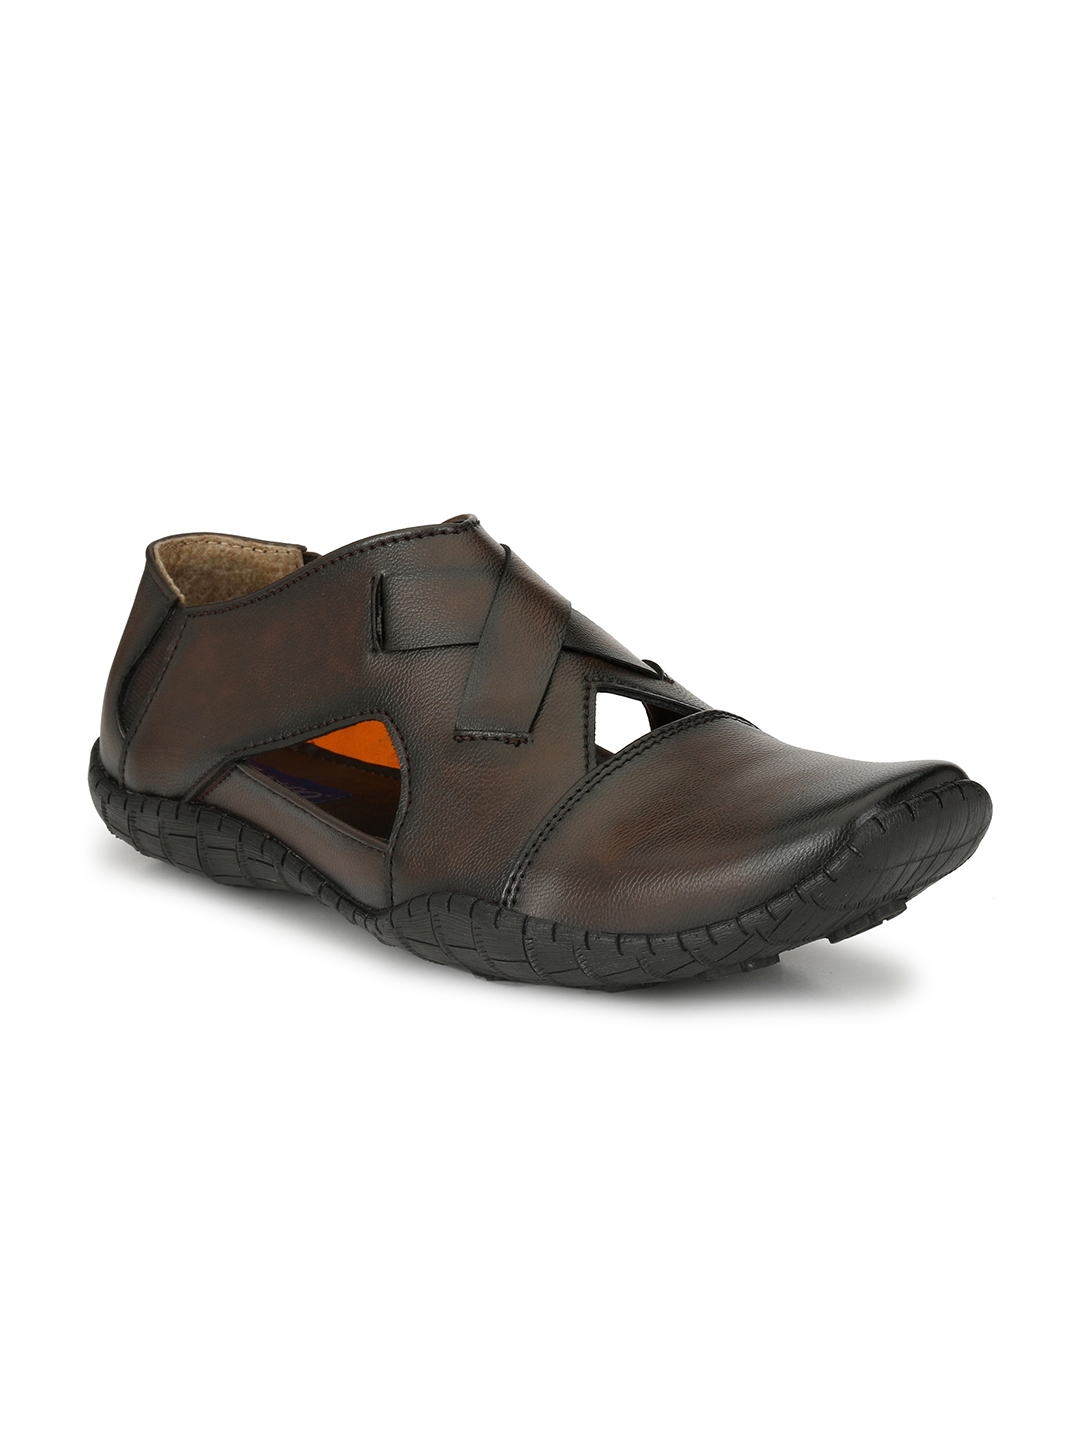 Buy El Paso Men Brown Sandals - Sandals for Men 2171611 | Myntra